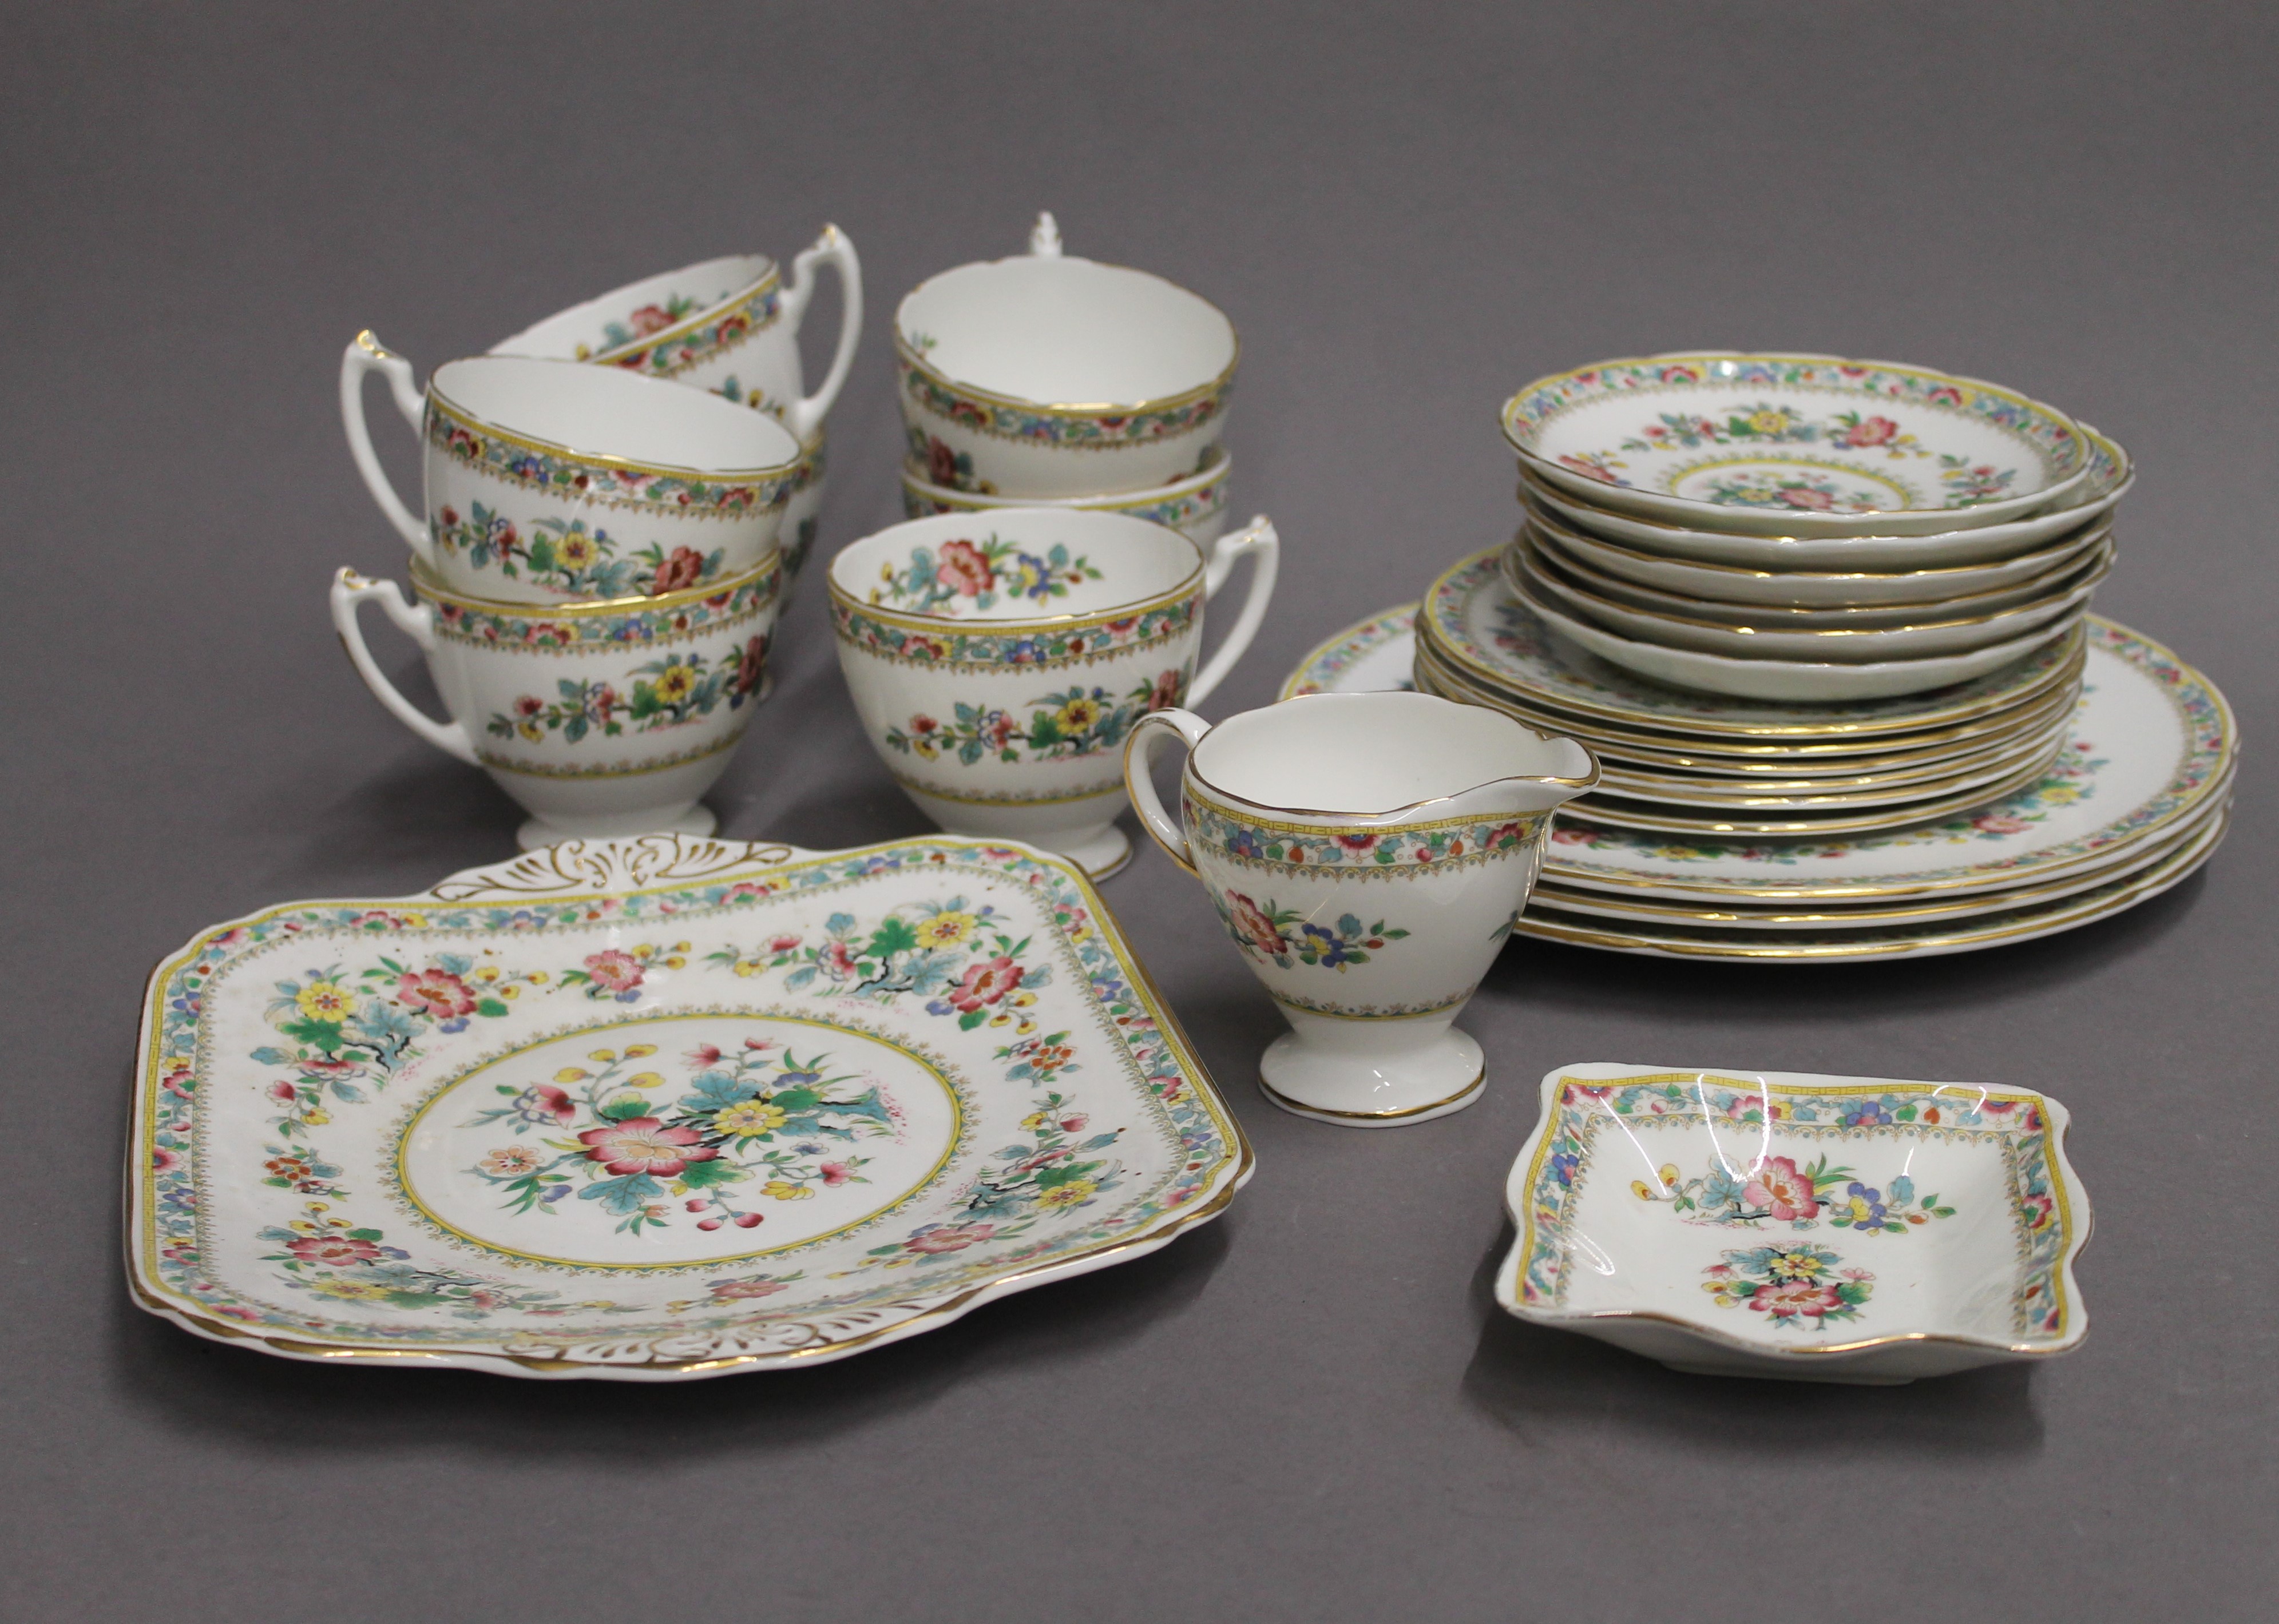 A Coalport Ming Rose porcelain tea set and various dinner wares.